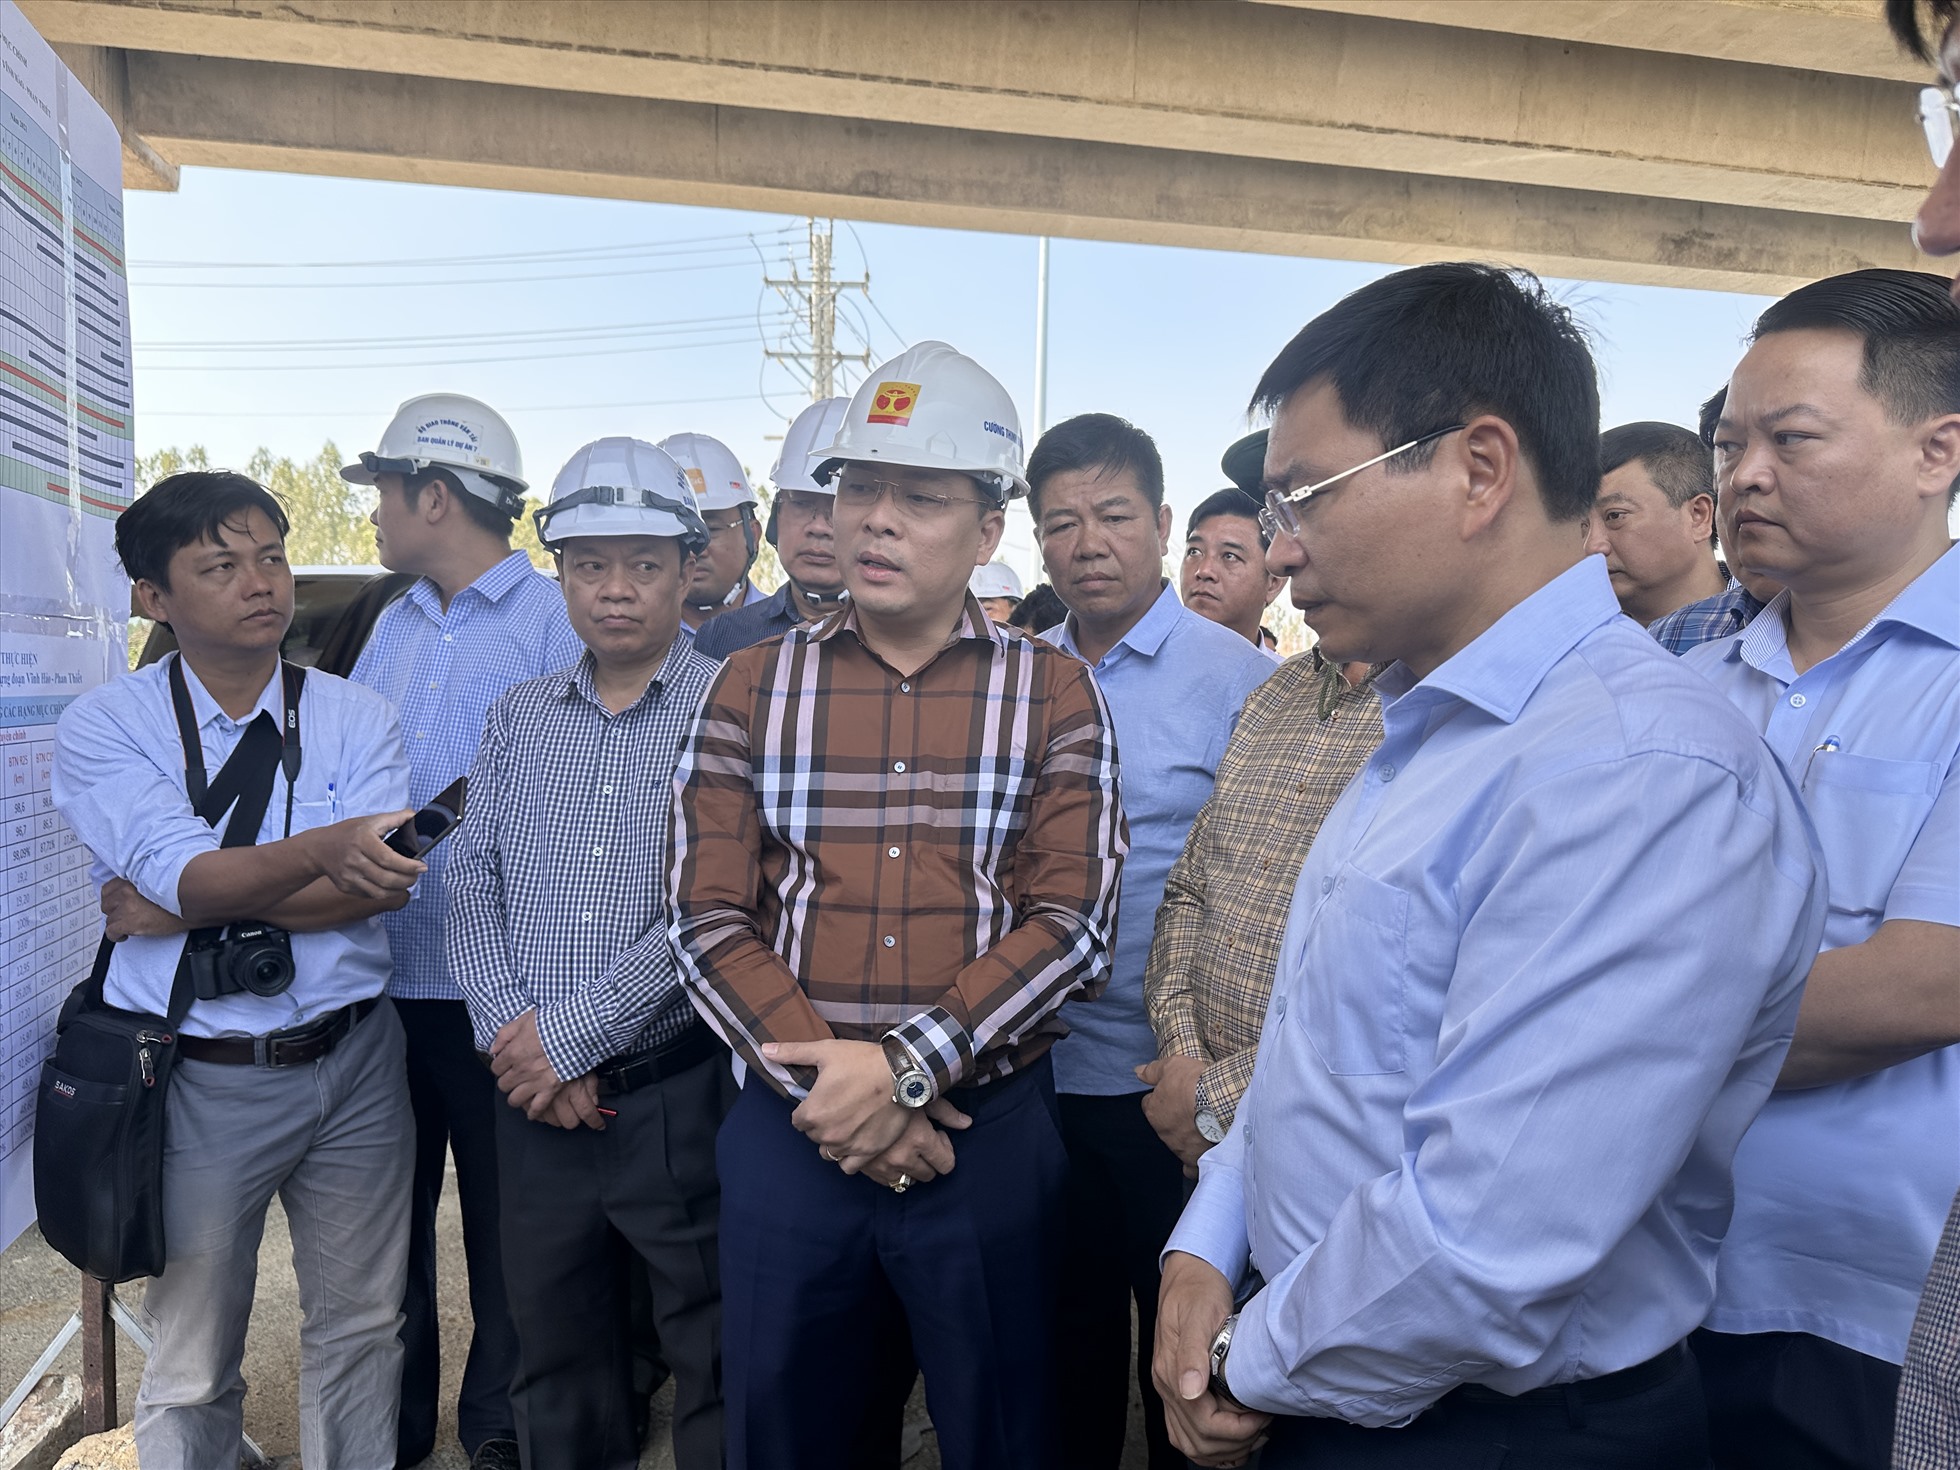 Đoàn công tác của Bộ trưởng Giao thông Vận tải Nguyễn Văn Thắng đi kiểm tra 2 dự án cao tốc Dầu Giây-Phan Thiết và Vĩnh Hảo-Phan Thiết ngày 15.3. Ảnh: Duy Tuấn